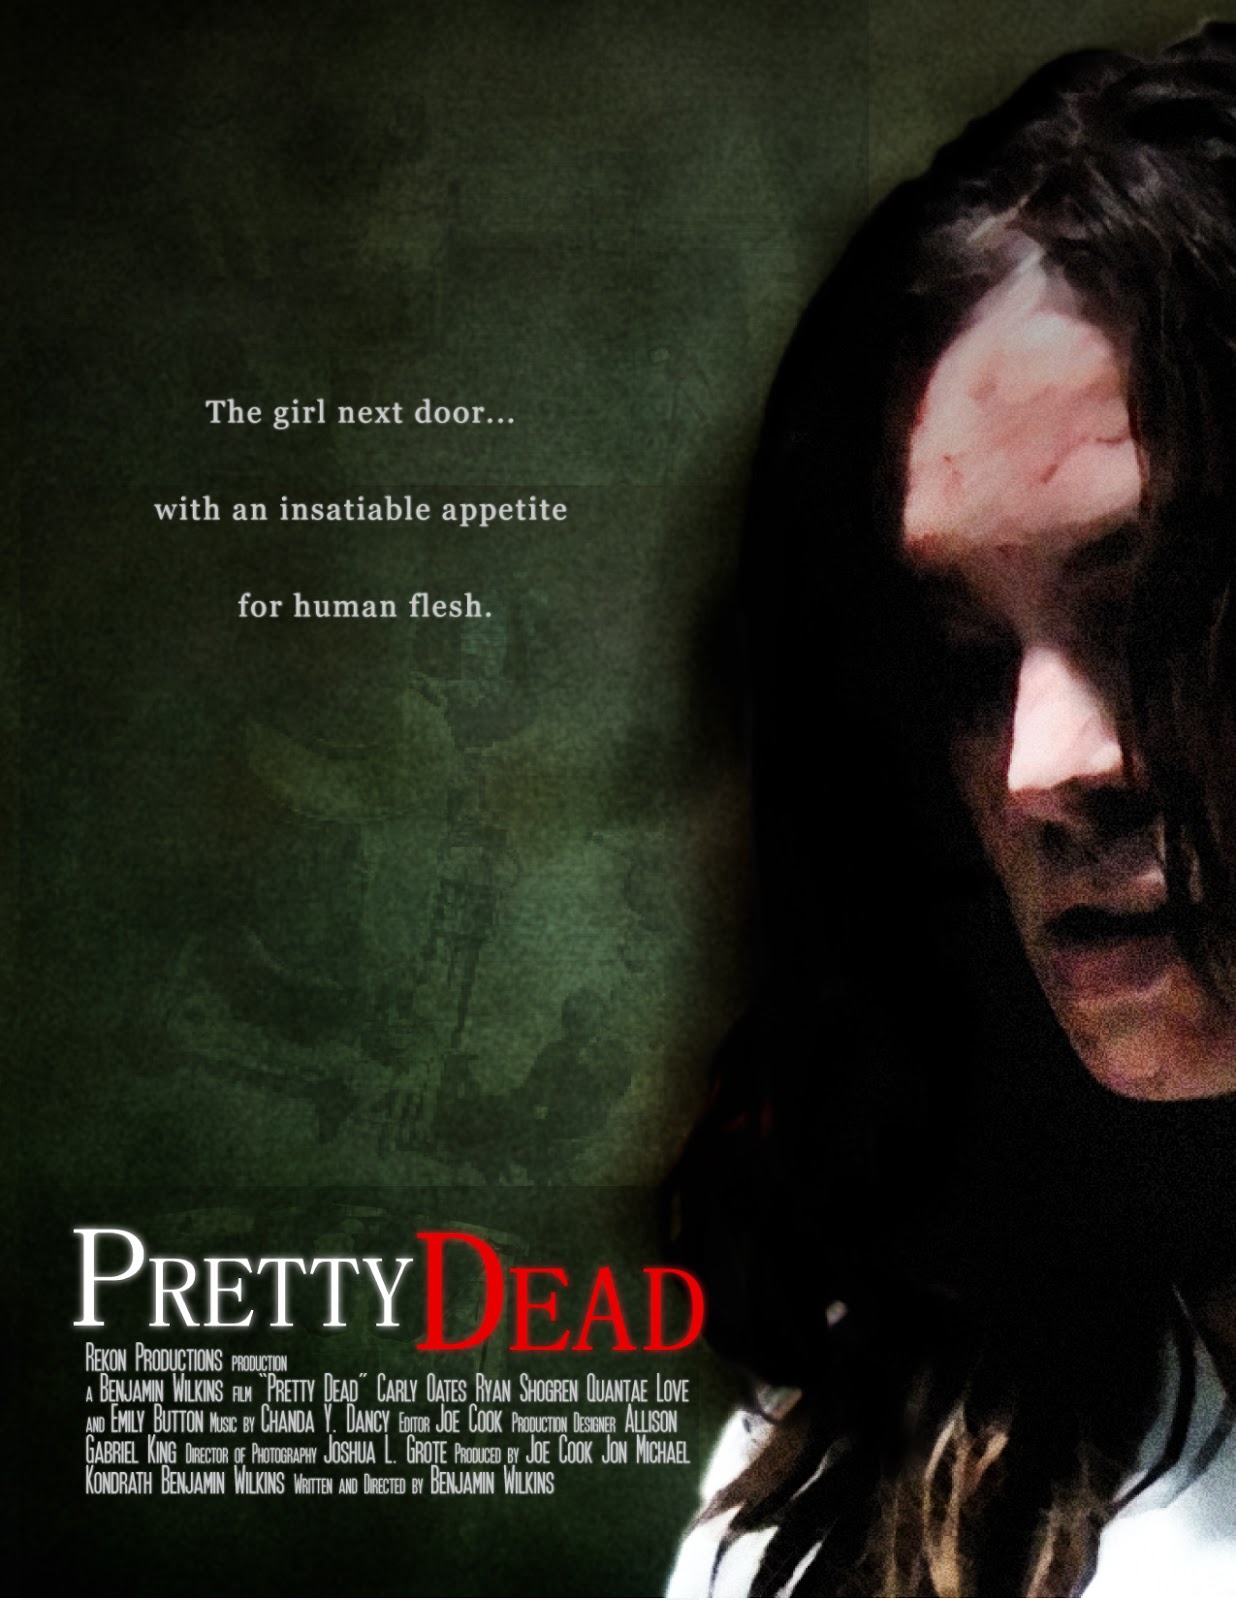 Pretty Dead (2013)